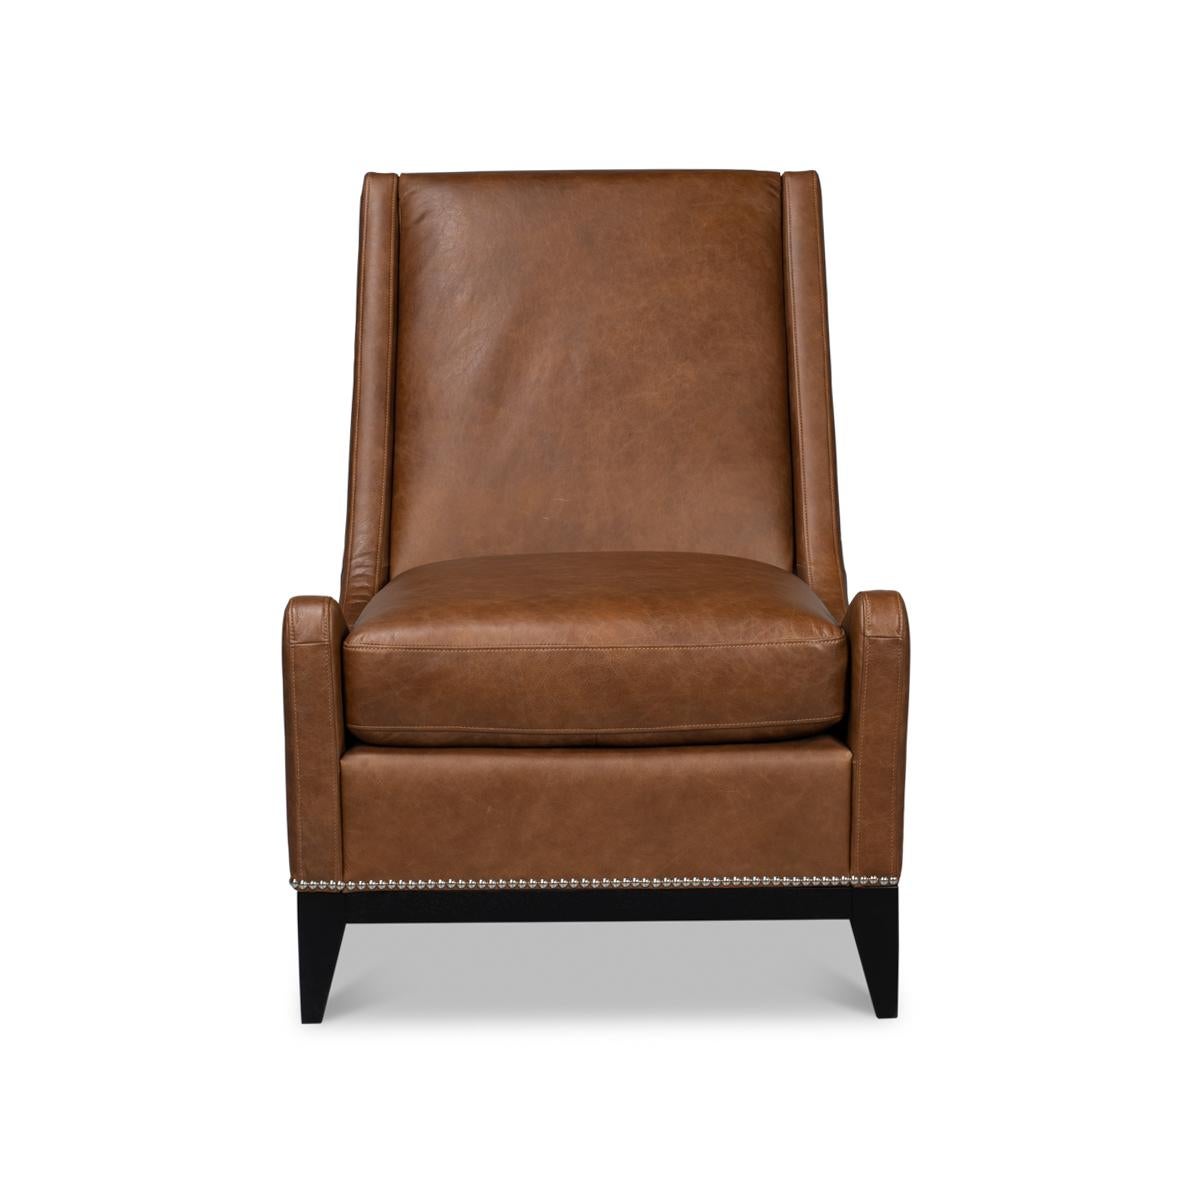 Dieser mit viel Liebe zum Detail gefertigte Sessel besteht aus geschmeidigem, genarbtem Leder, das Sie zum Sitzen und Entspannen einlädt. Der warme, satte schokoladenbraune Farbton des Leders wird durch die klassische Nagelkopfverzierung wunderbar